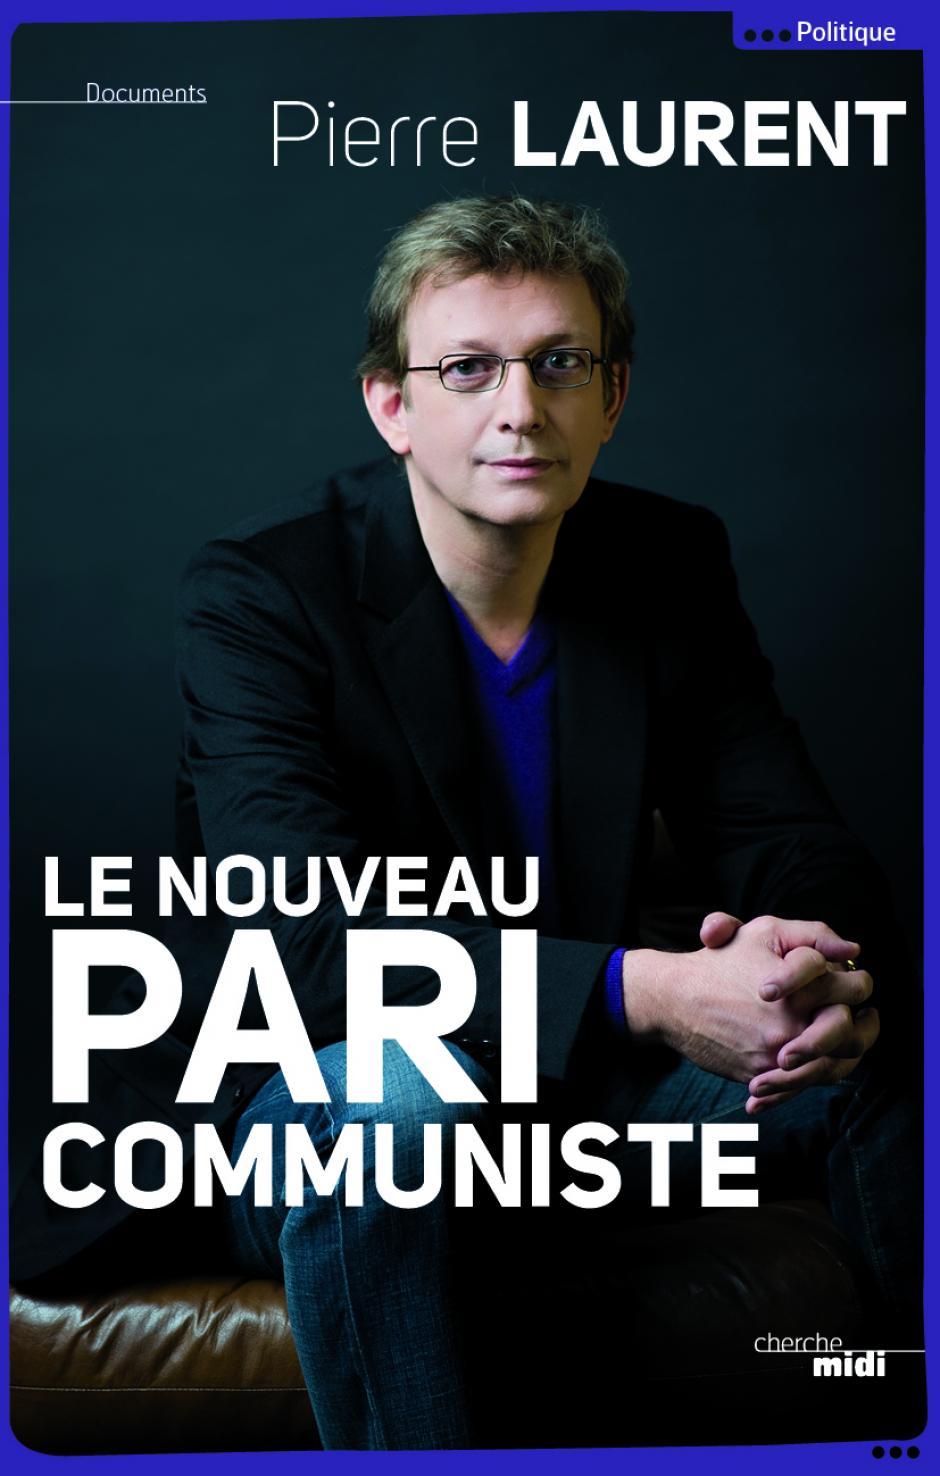 Pierre Laurent présente son nouveau livre : « Le Nouveau pari communiste »